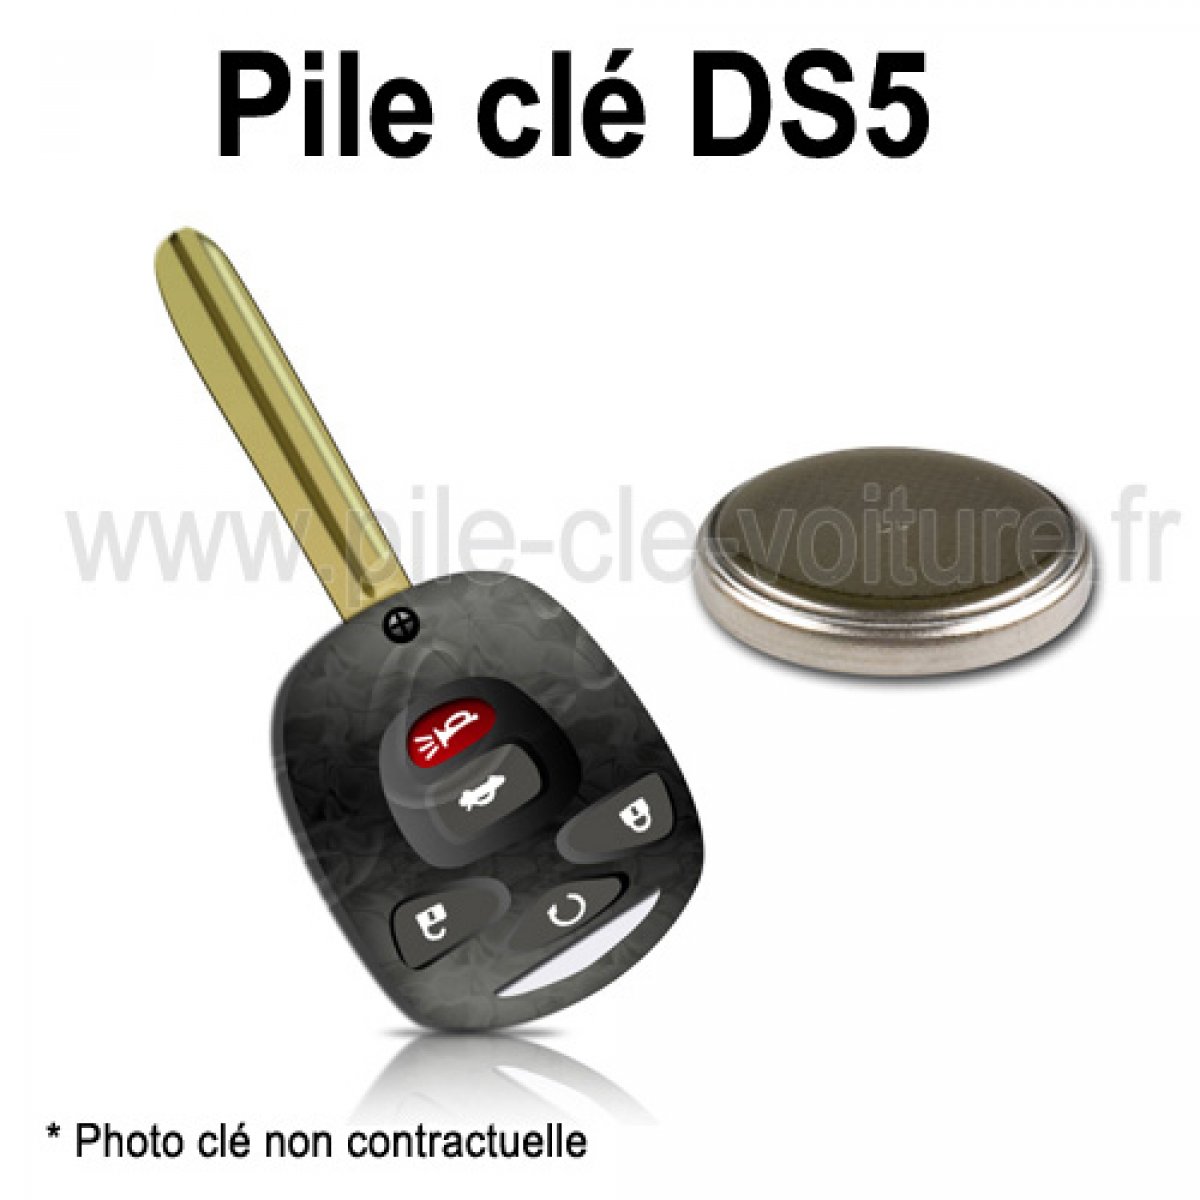 Remplacer la pile de votre clé Peugeot ou Citroën DS4 DS5 C4 